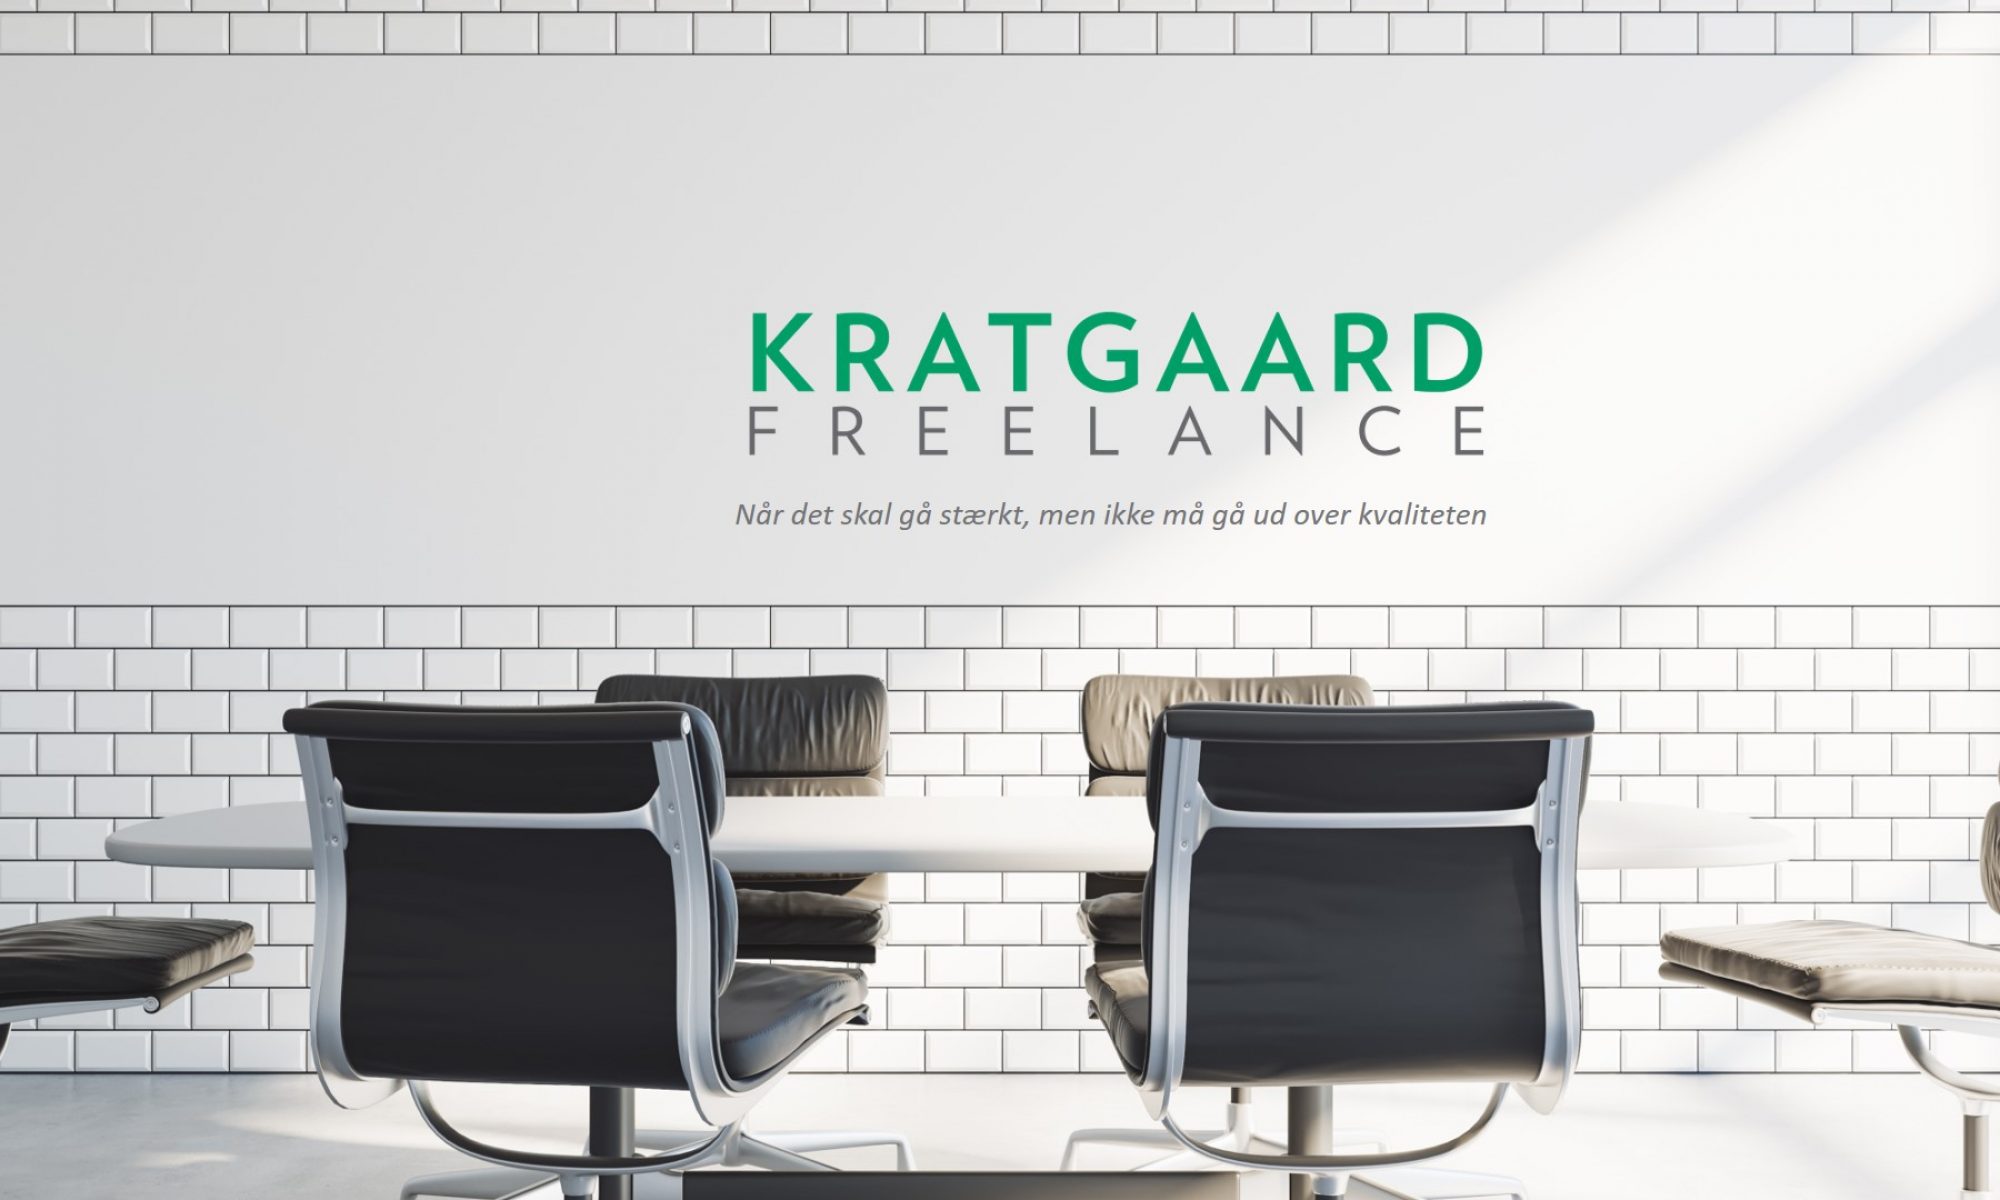 Kratgaard.com